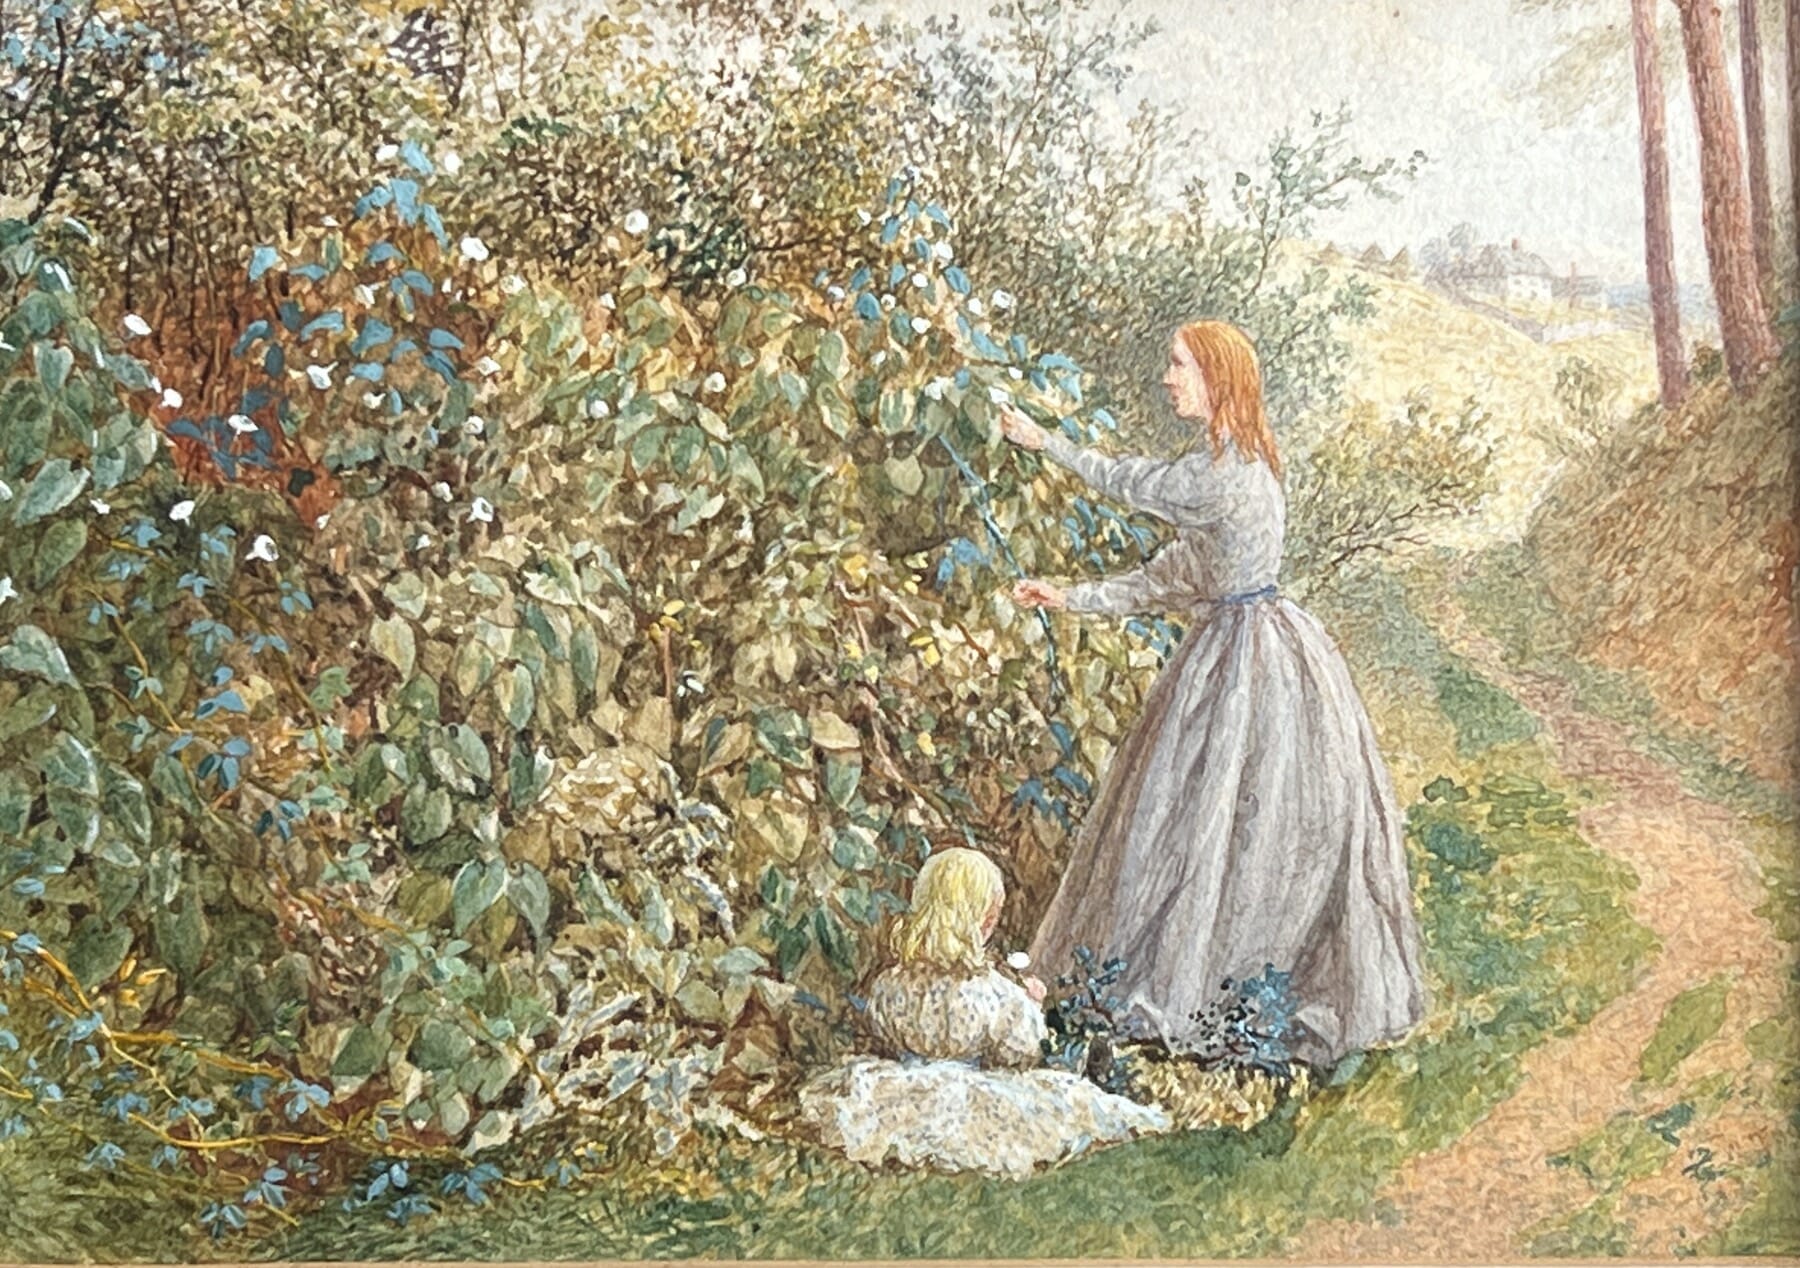 William Took Watercolour, dated 1846